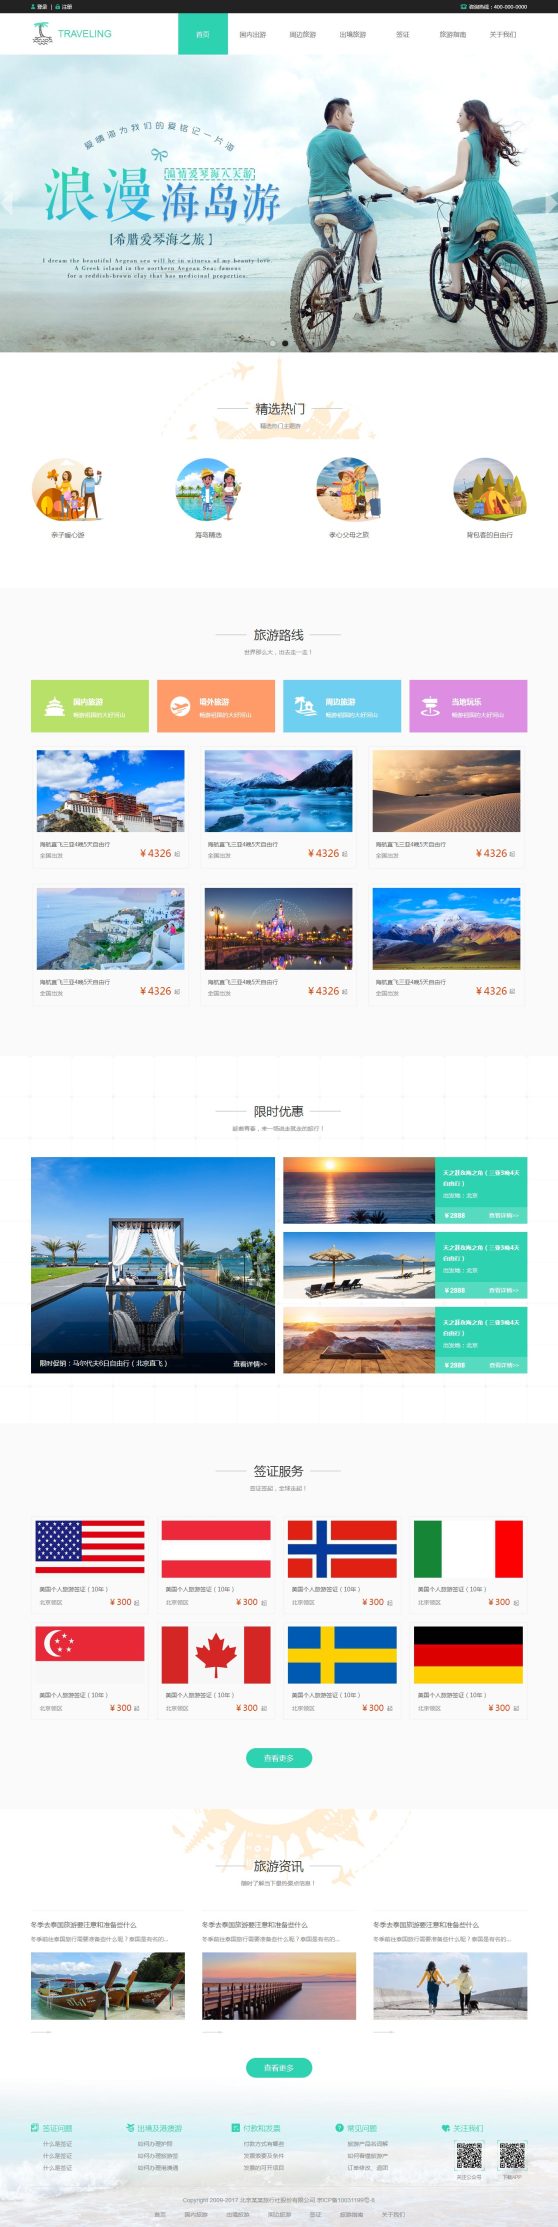 优选旅游网站公司网站模板